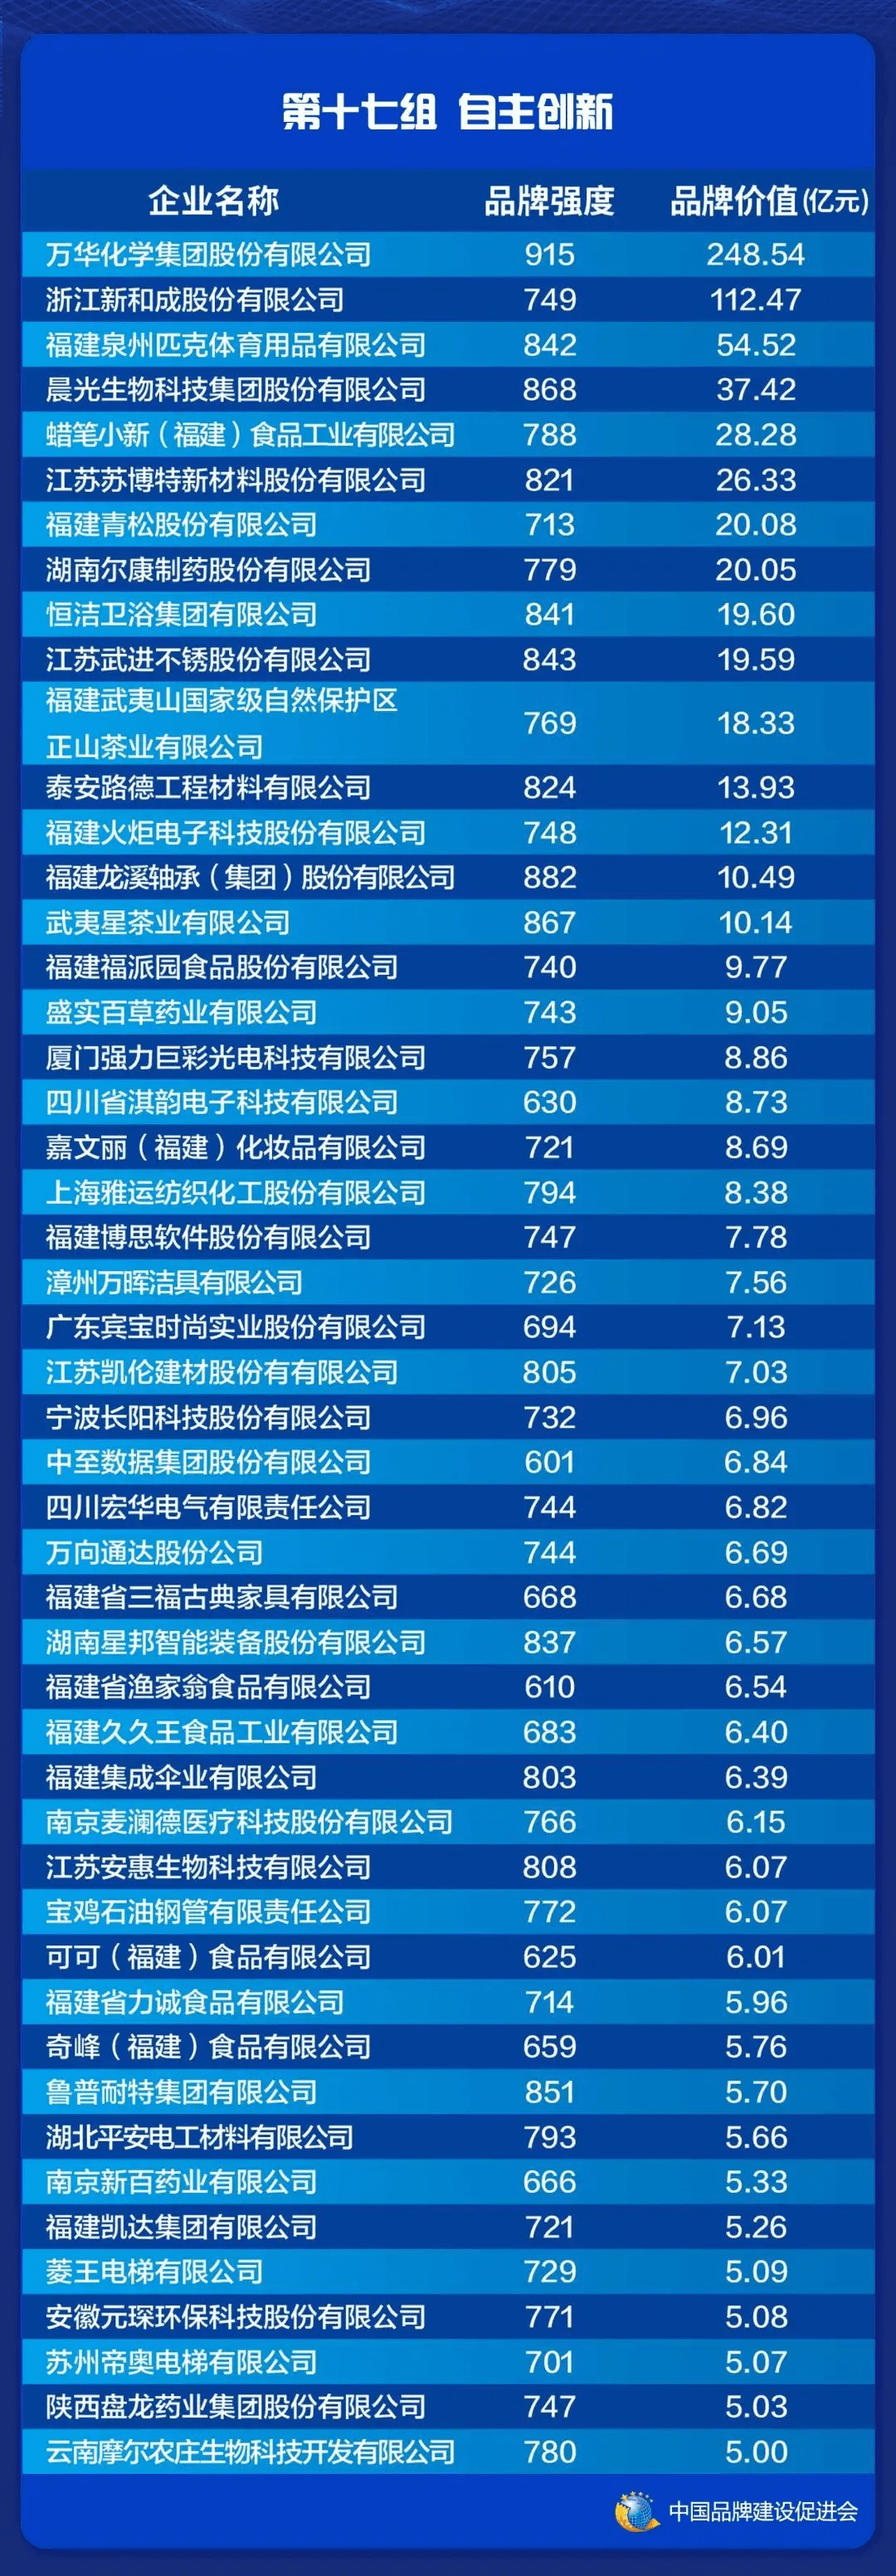 中国品牌价值排行榜_中国钢铁品牌价值排行榜!沙钢第一,兴澄、永钢、日钢、中天上榜